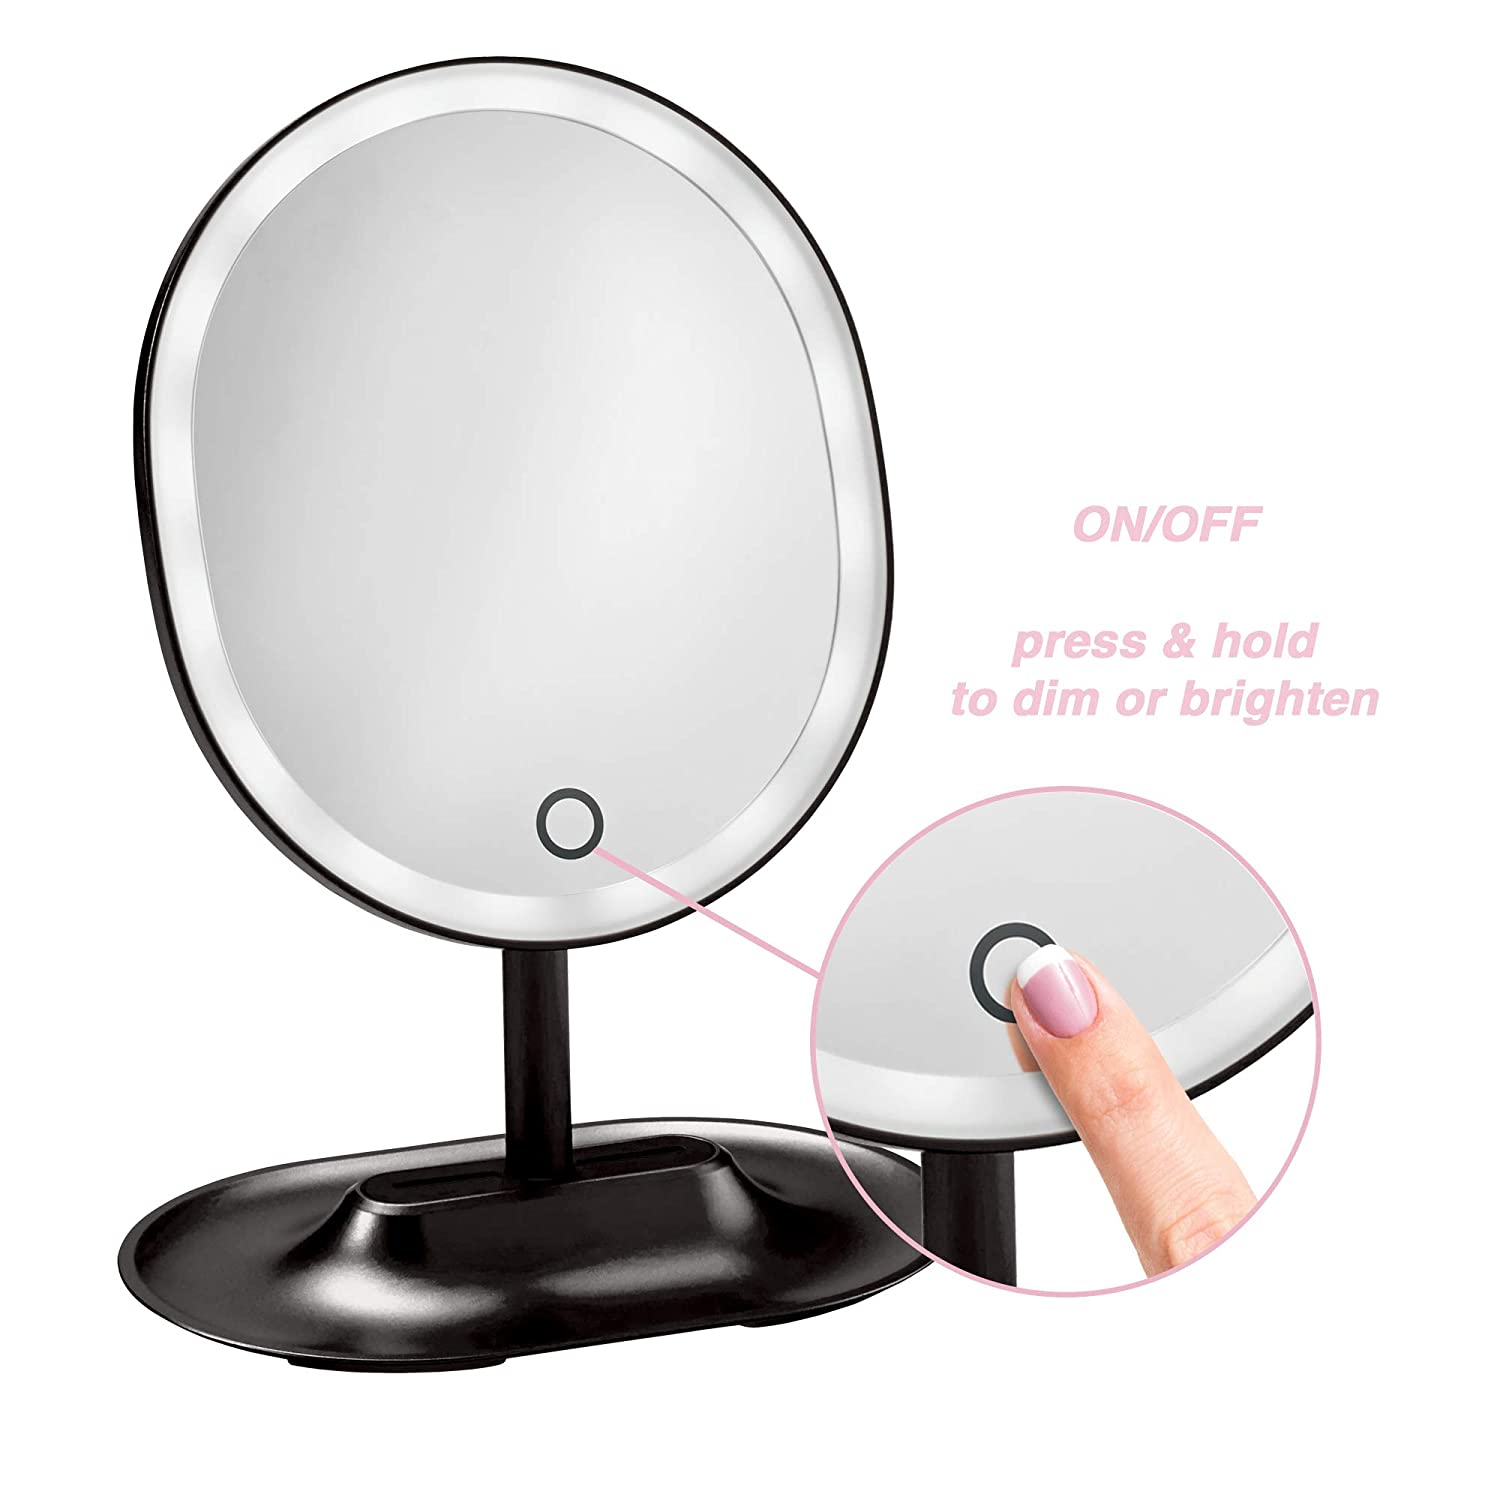 Light Up LED Makeup Mirror with Adjustable Brightness & Tilt